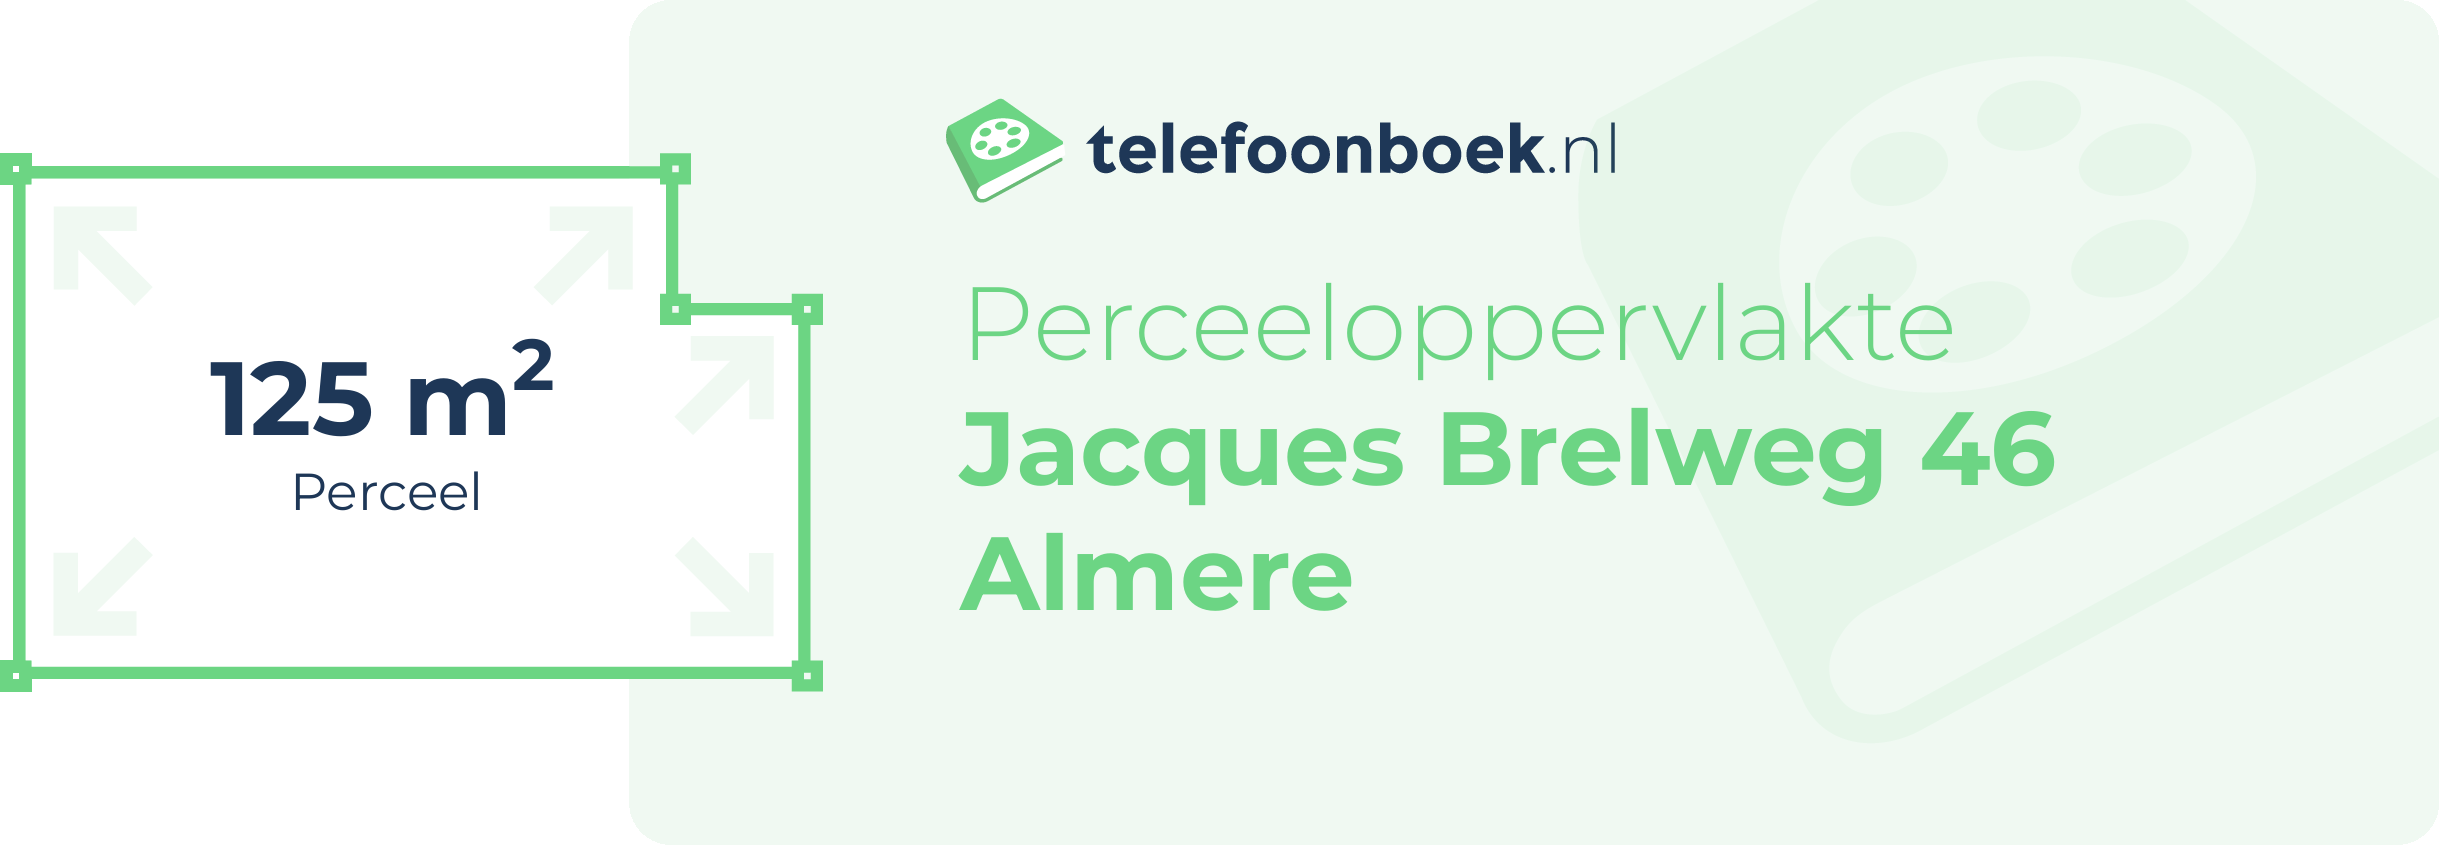 Perceeloppervlakte Jacques Brelweg 46 Almere